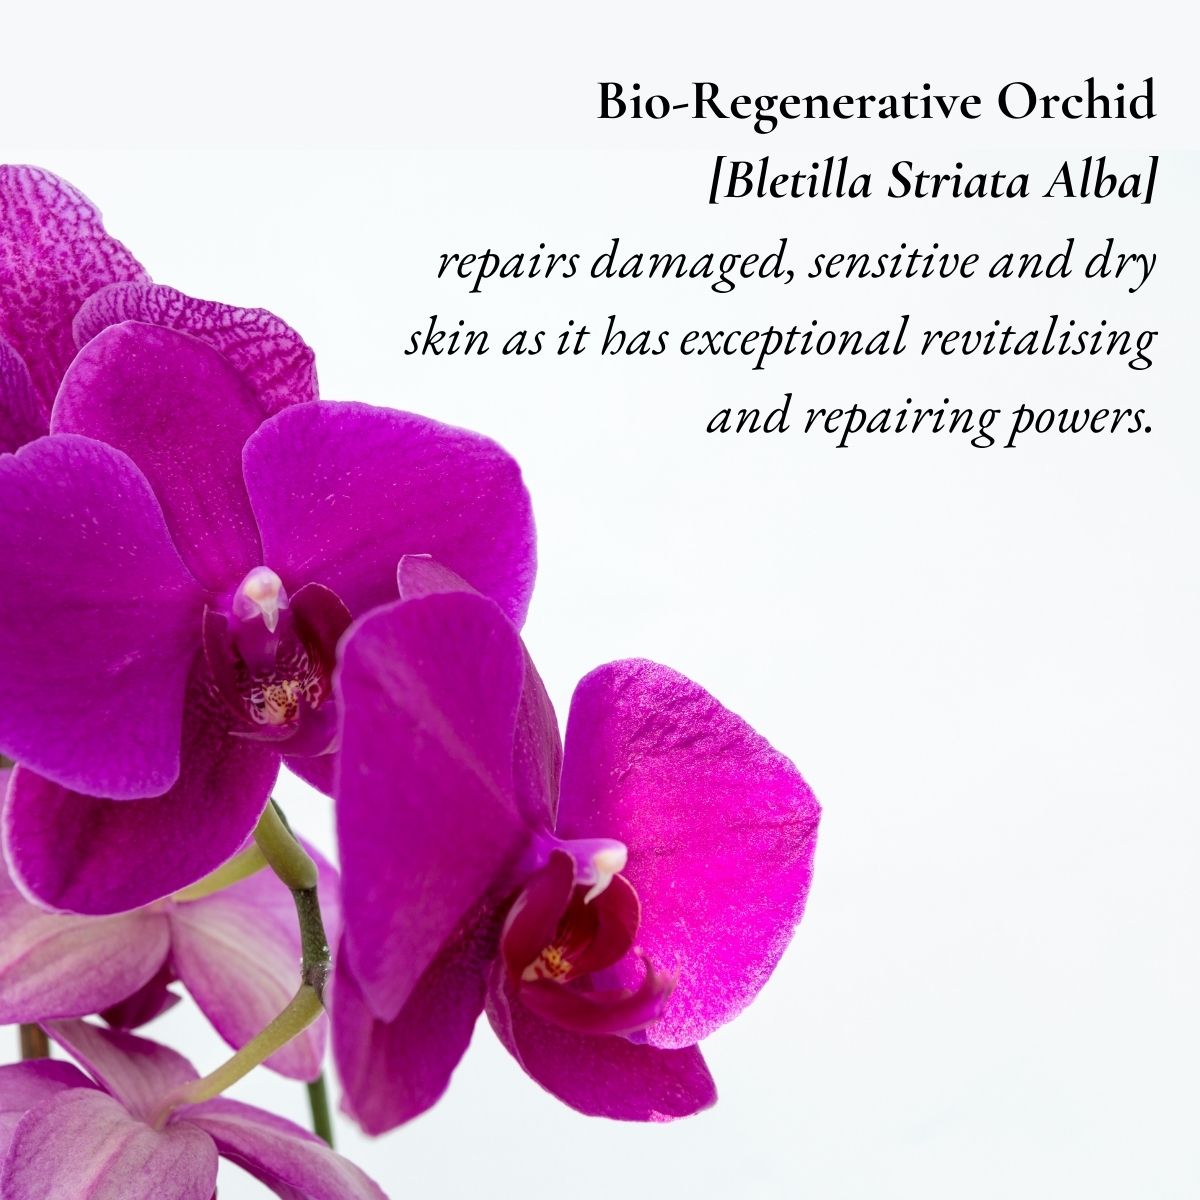 Bio-Regenerative Orchid has powerful repairing abilities